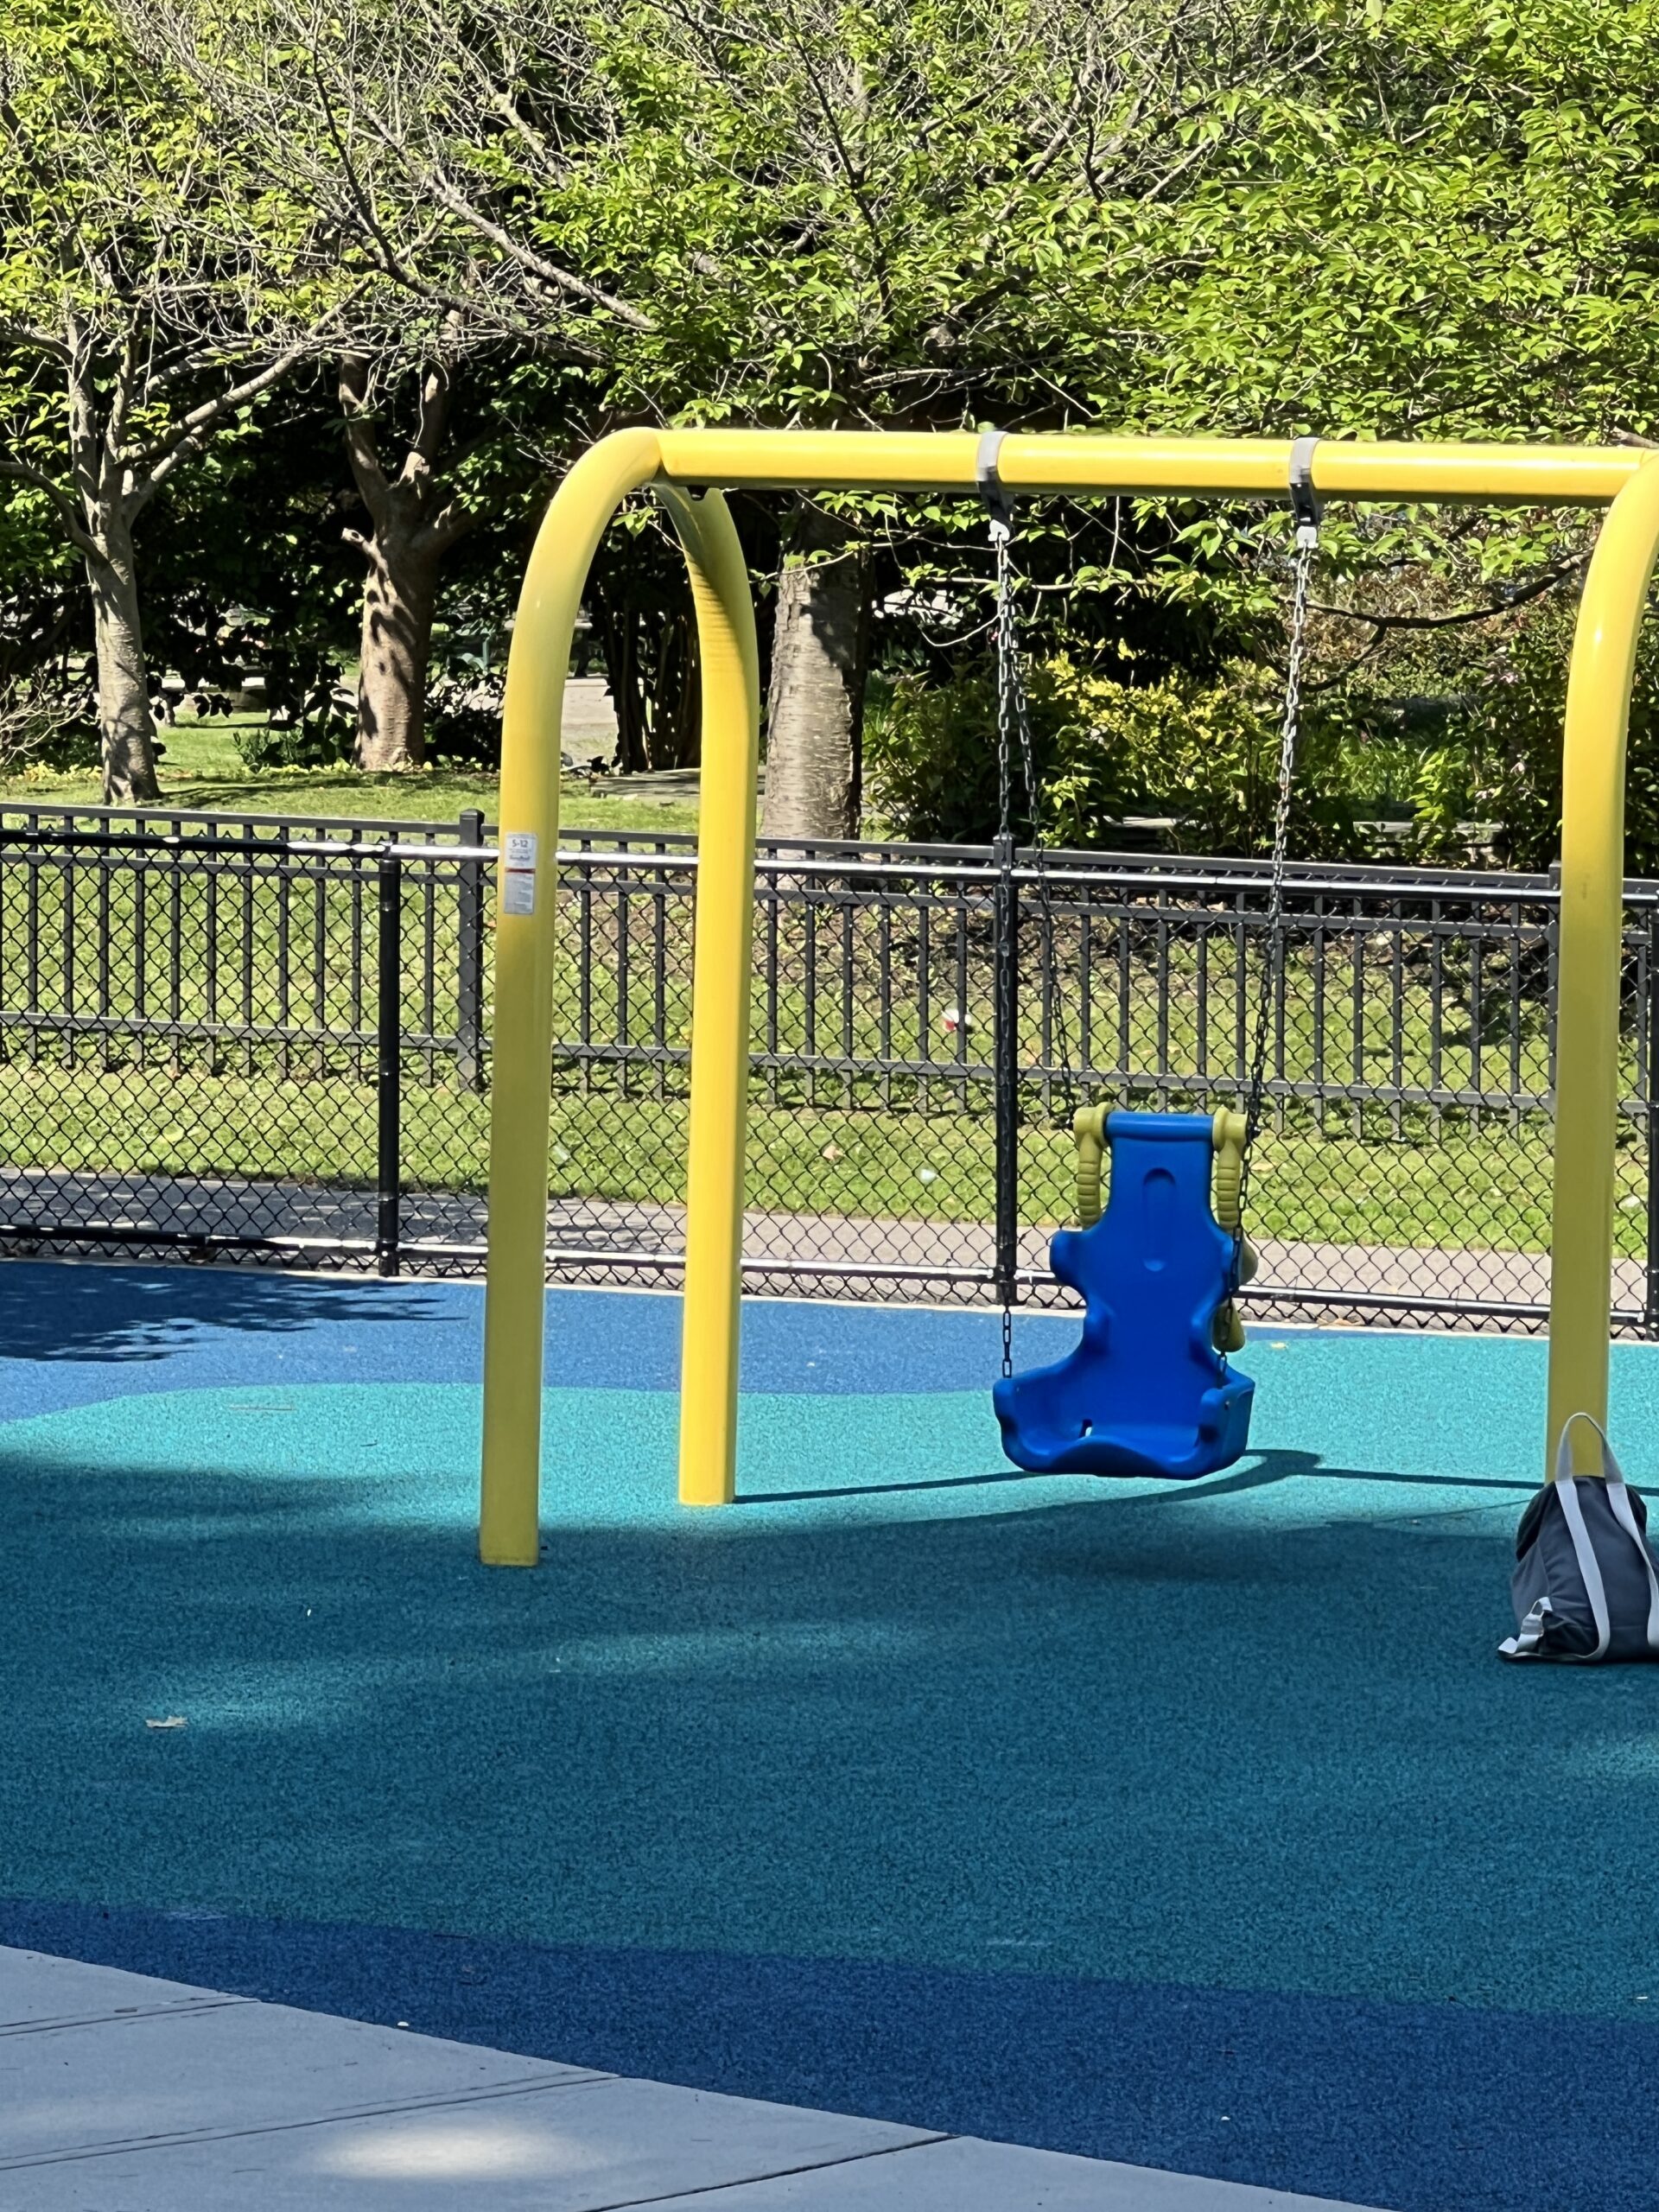 Verona Park Playground in Verona NJ - SWINGS - accessible swings